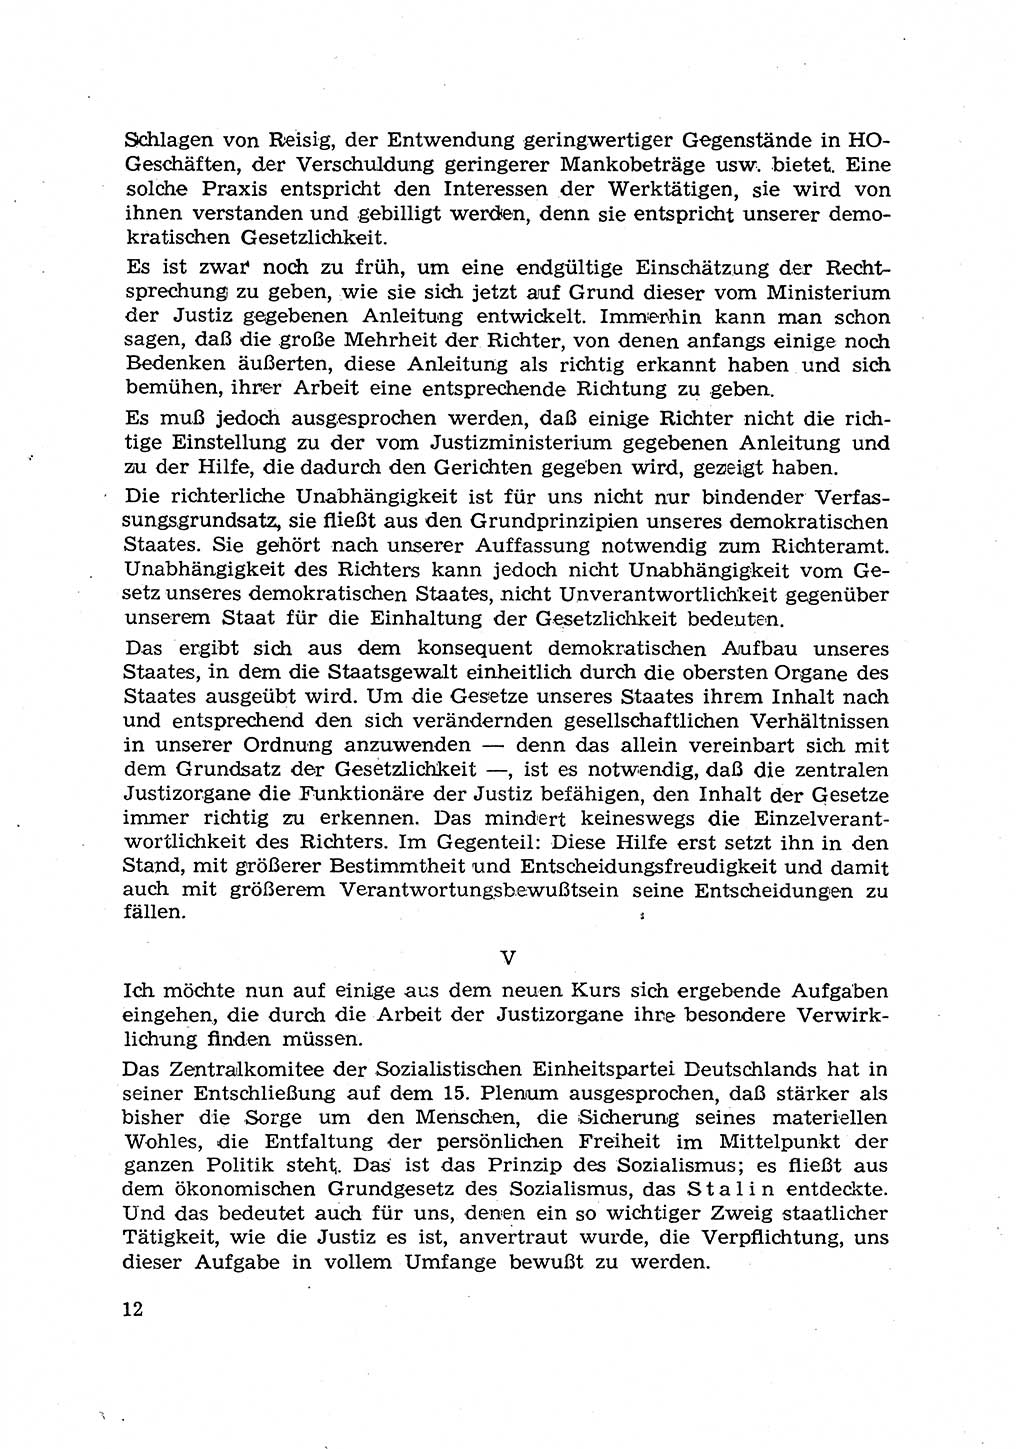 Hauptaufgaben der Justiz [Deutsche Demokratische Republik (DDR)] bei der Durchführung des neuen Kurses 1953, Seite 12 (Hpt.-Aufg. J. DDR 1953, S. 12)